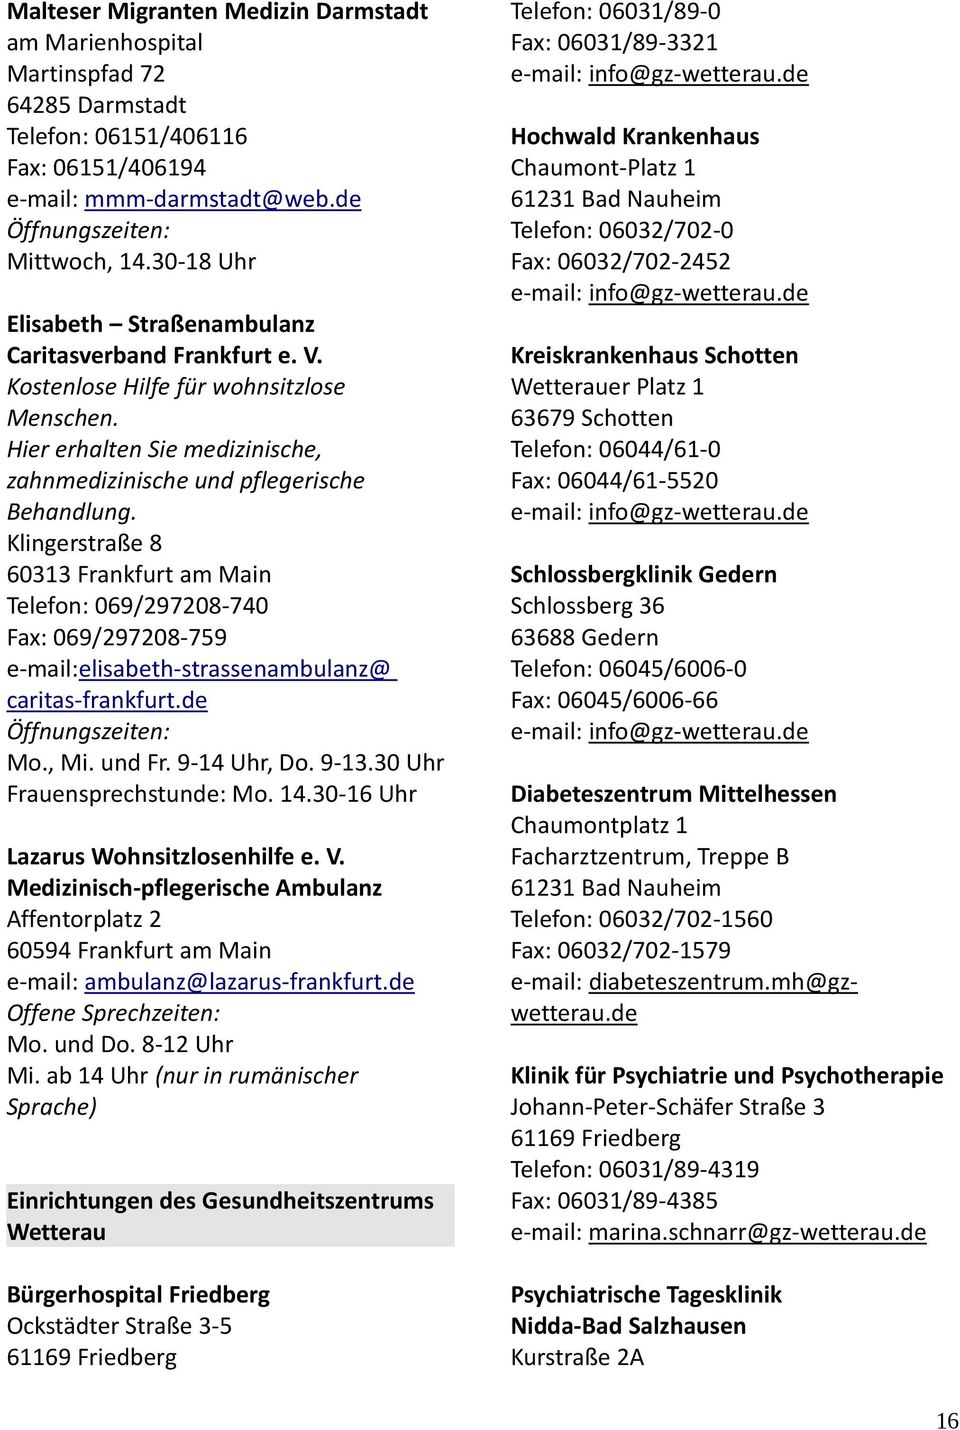 Klingerstraße 8 60313 Frankfurt am Main Telefon: 069/297208-740 Fax: 069/297208-759 e-mail:elisabeth-strassenambulanz@ caritas-frankfurt.de Öffnungszeiten: Mo., Mi. und Fr. 9-14 Uhr, Do. 9-13.